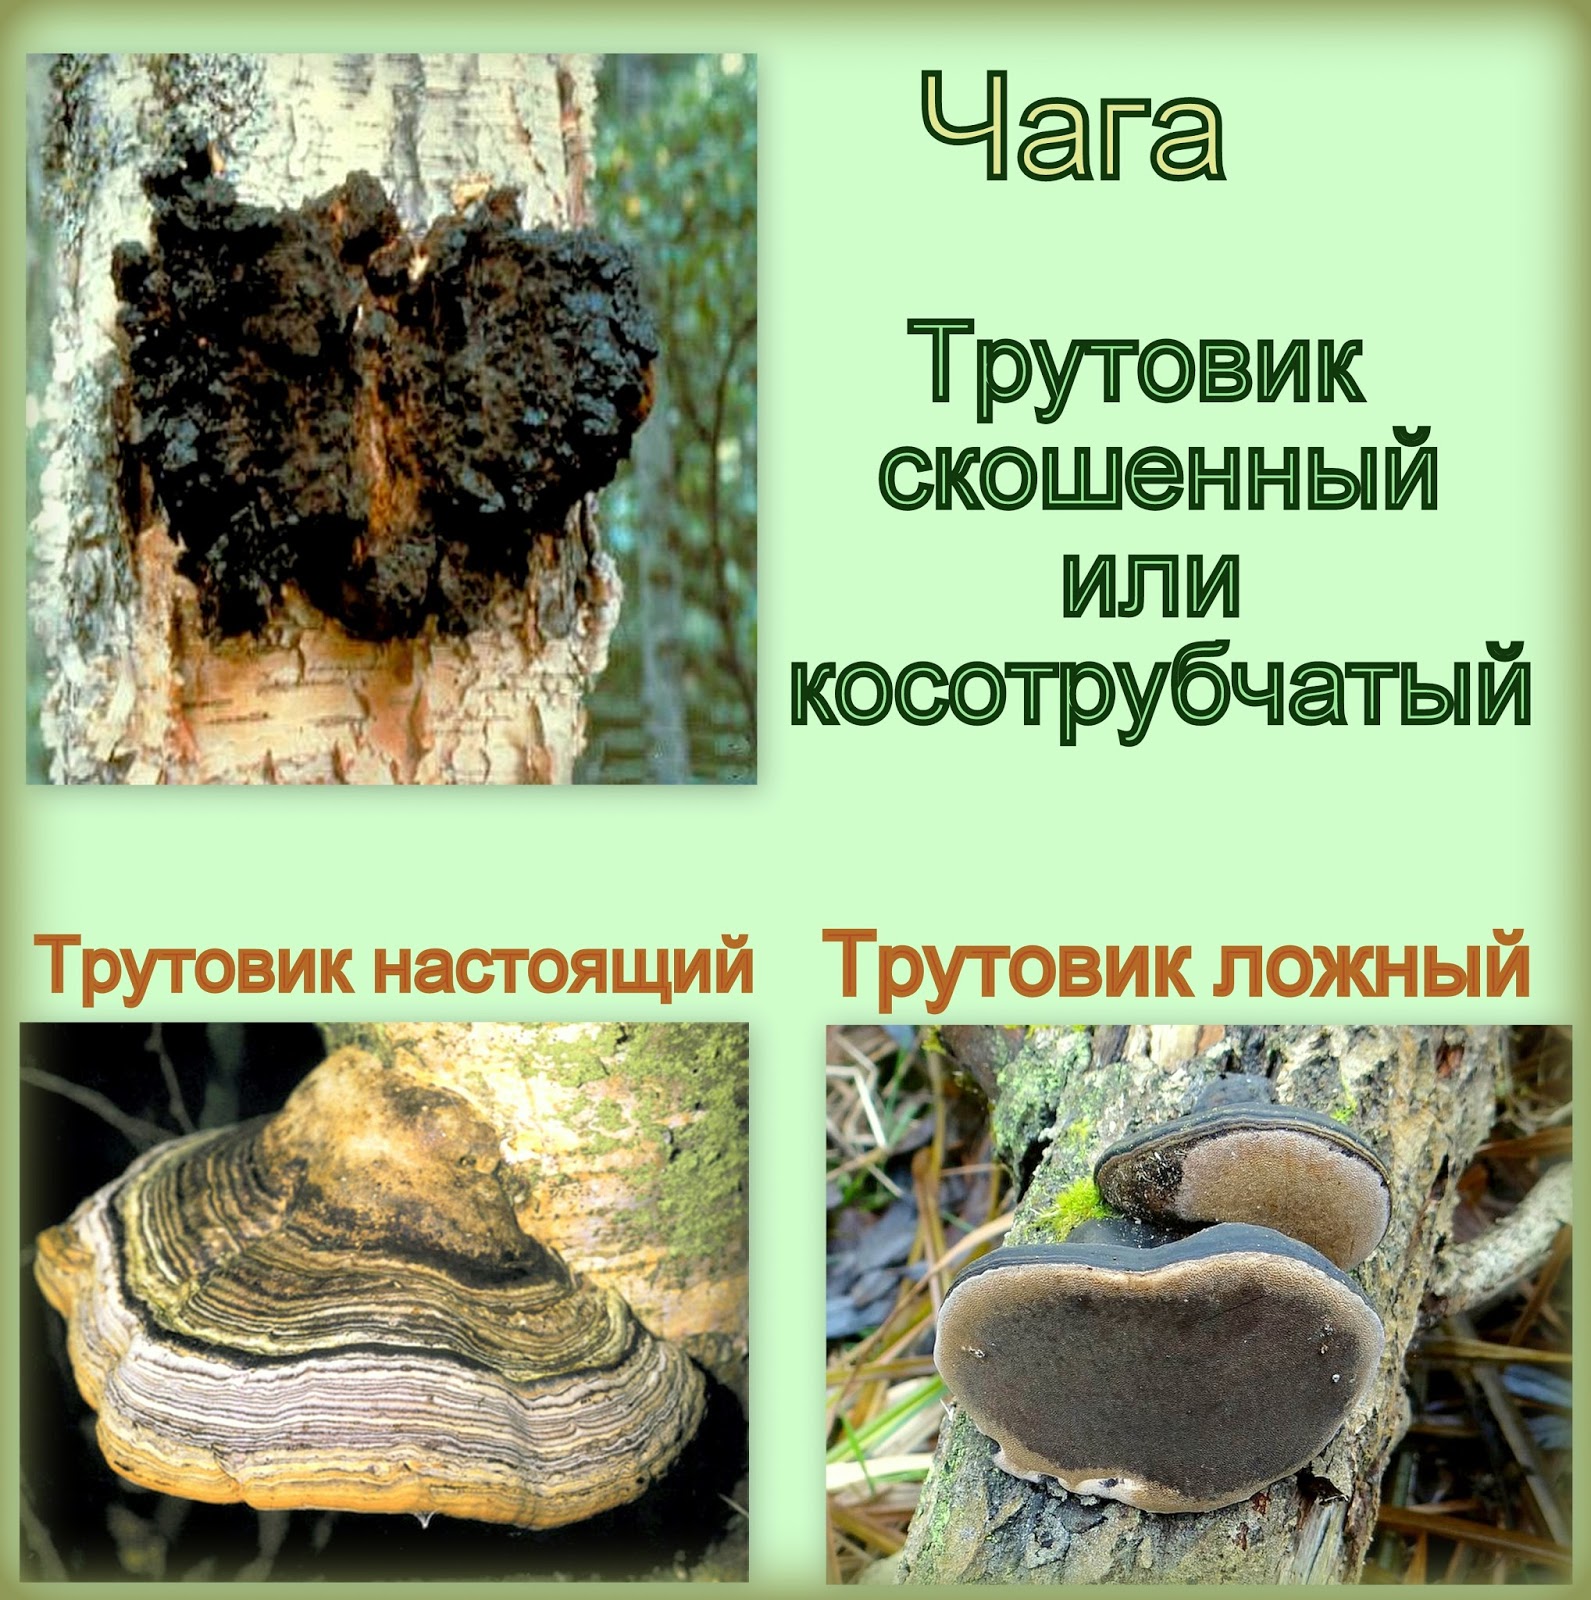 Гриб трутовик: фото, видео и описание, съедобный или нет, какие виды трутовиков распространены в россии